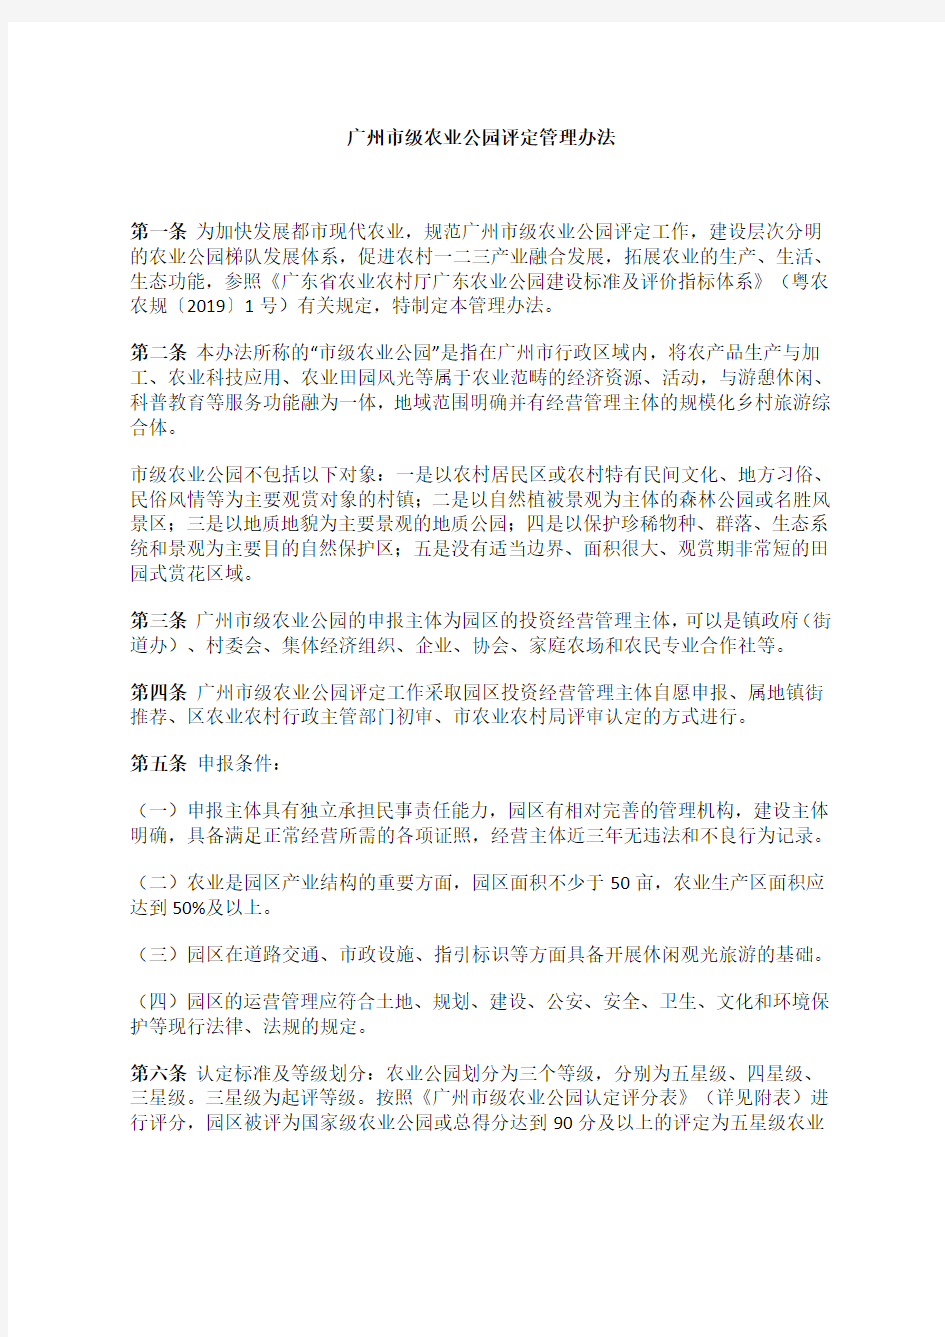 广州市农业农村局关于印发广州市级农业公园评定管理办法的通知